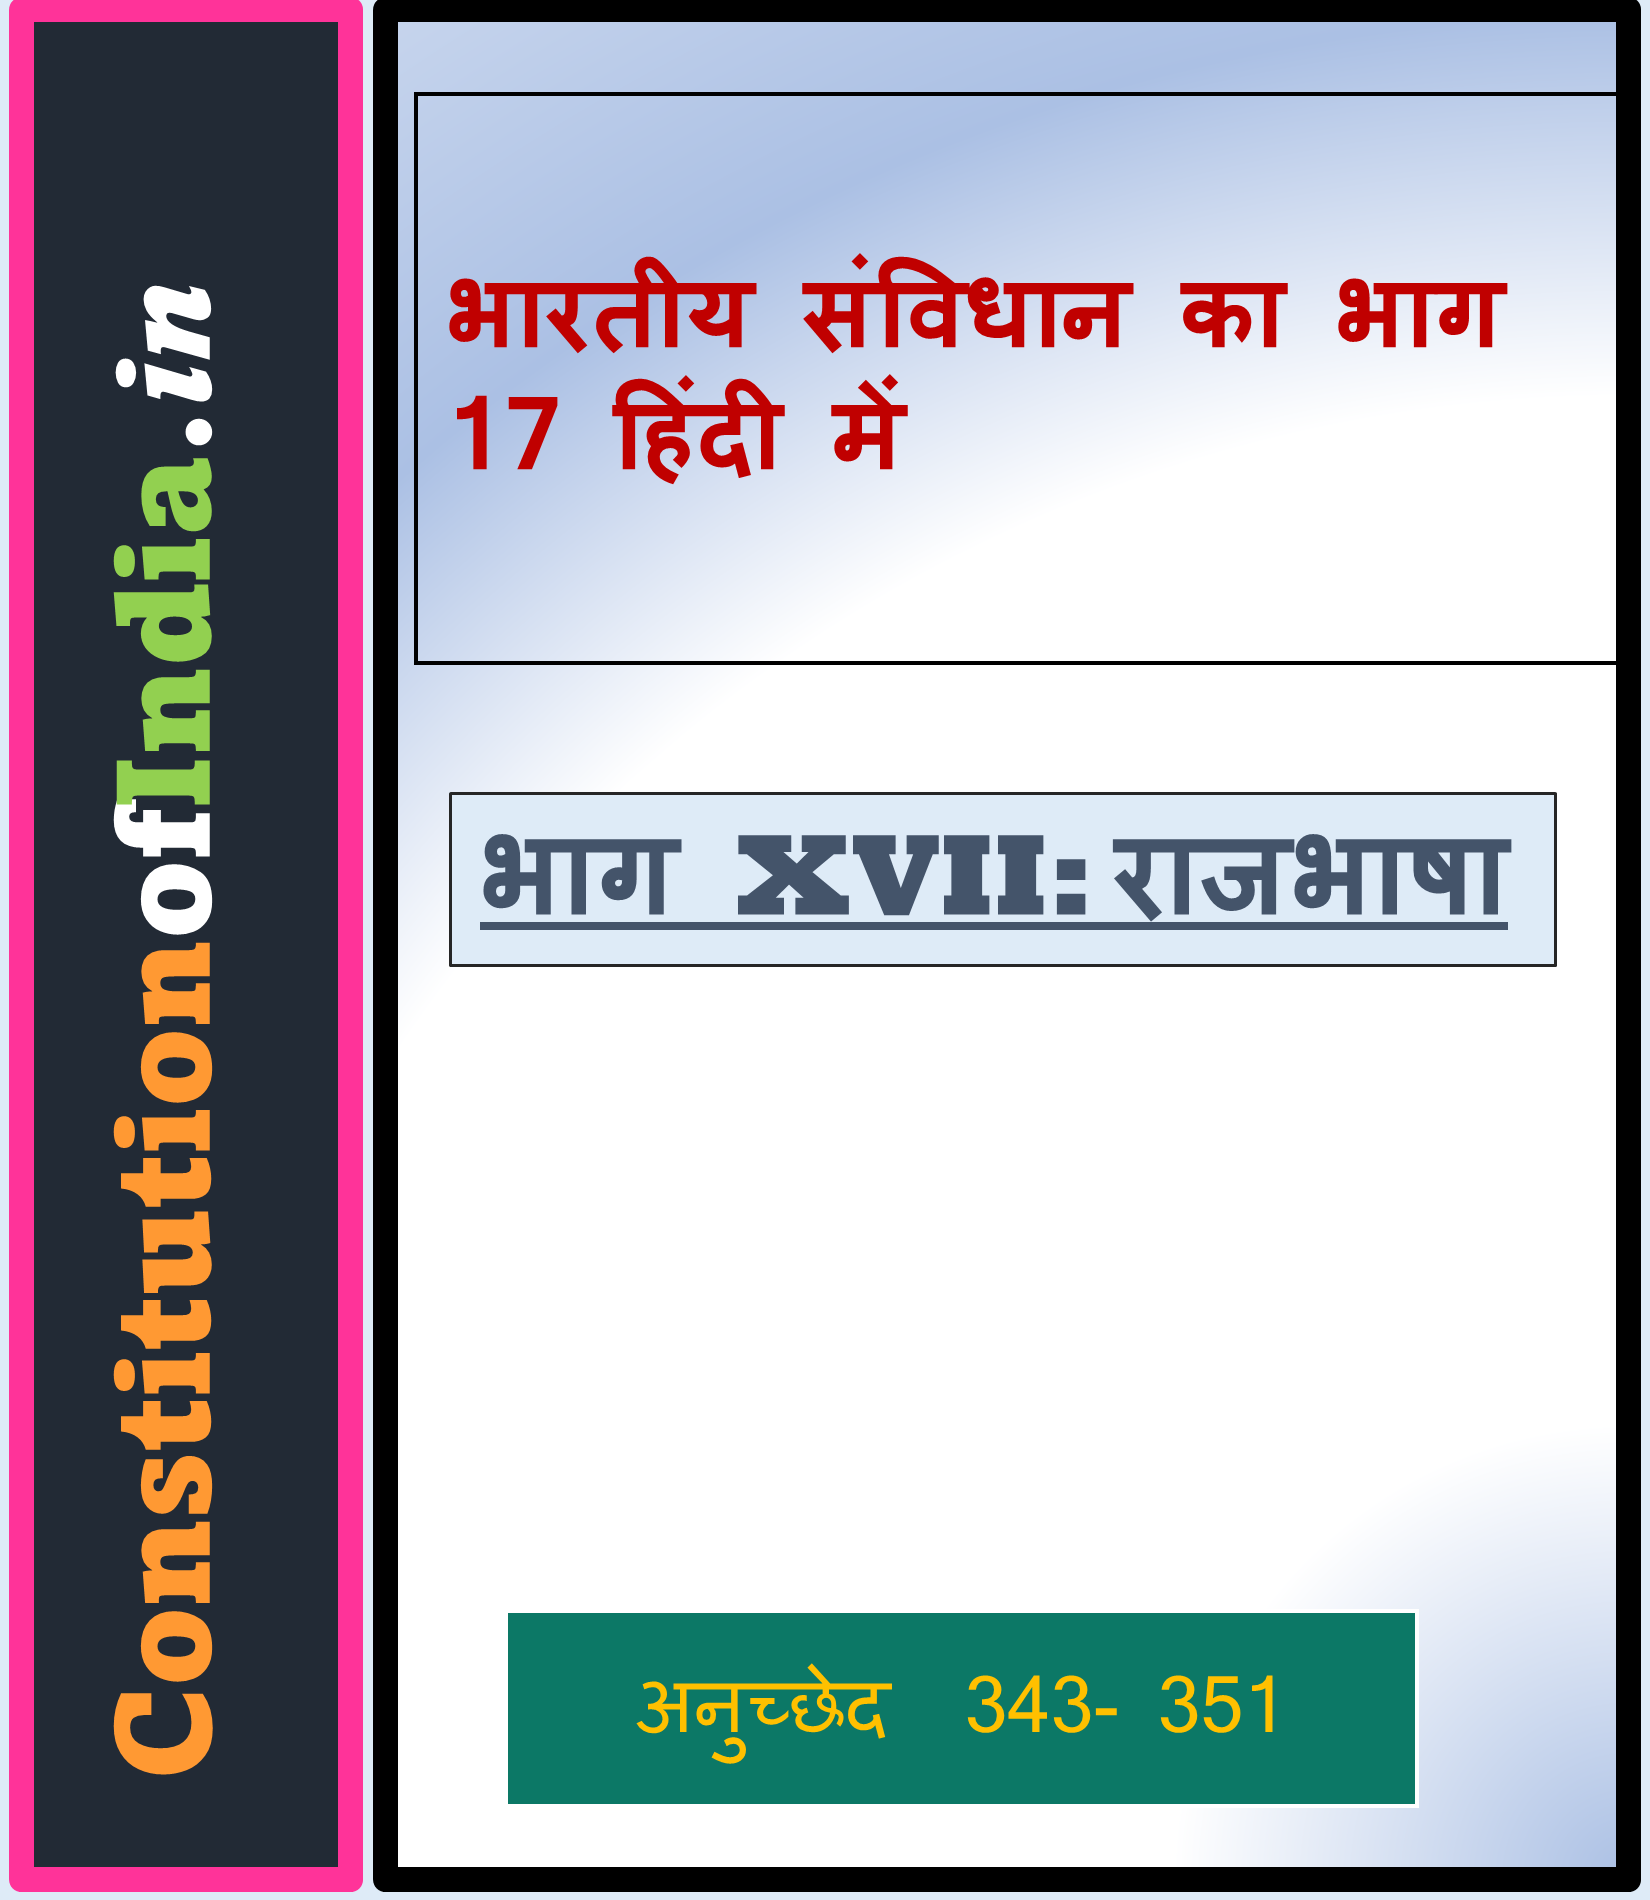 भारतीय संविधान का भाग 17 हिंदी में